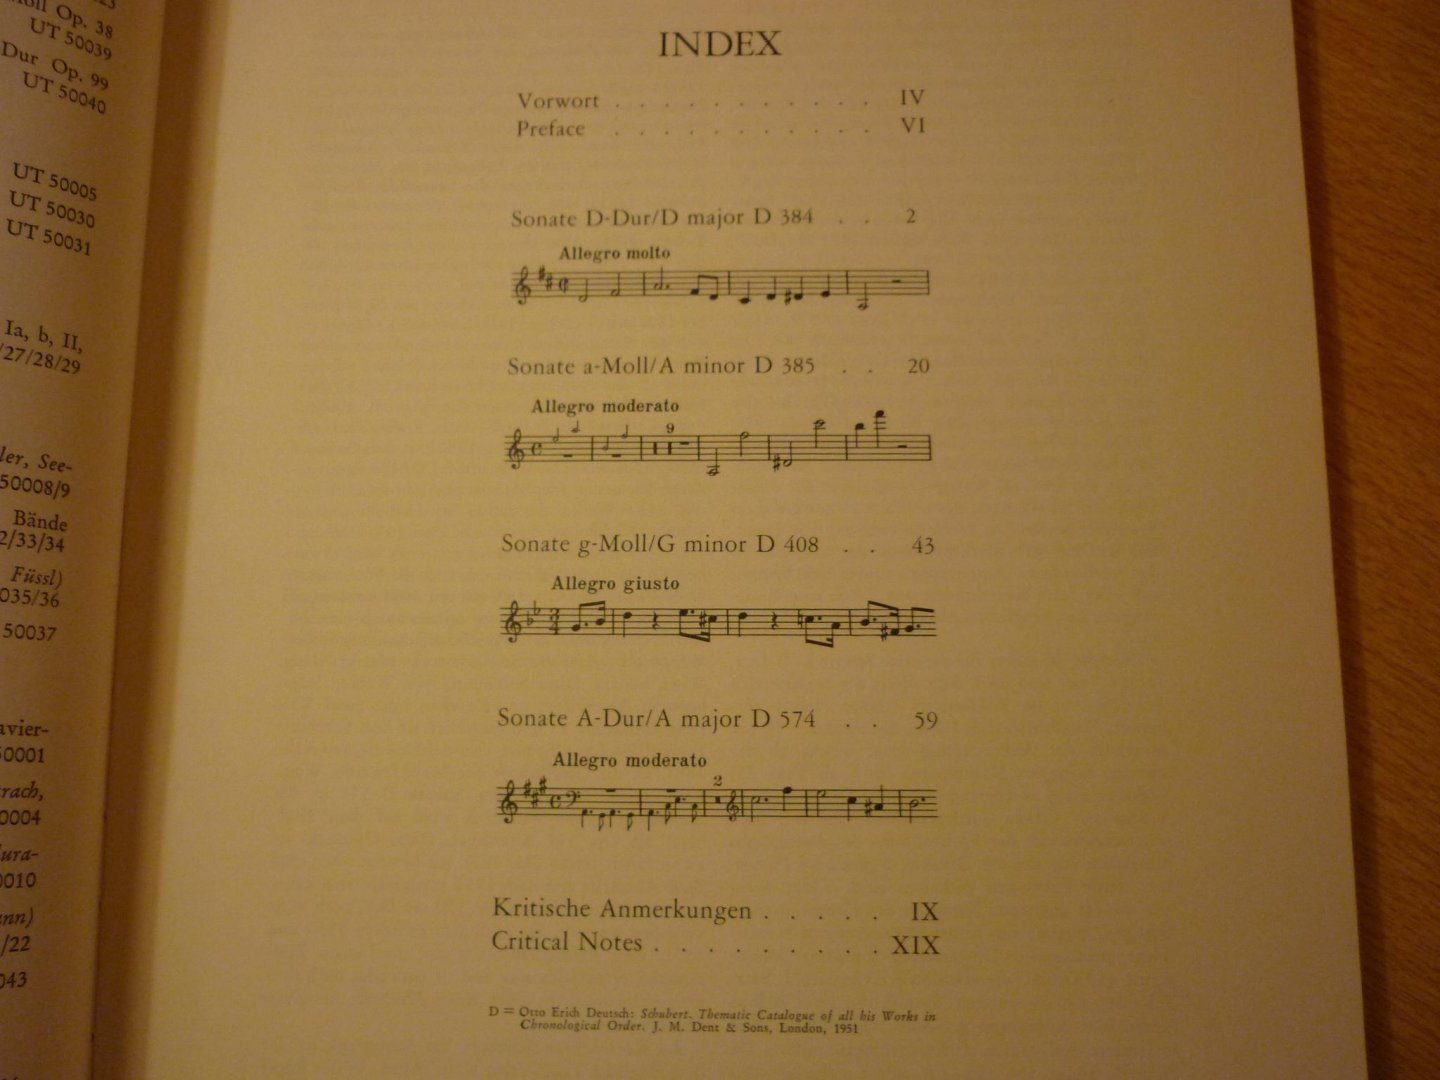 Schubert; Franz (1797–1828) - Sonaten für Klavier und Violine op. 137 und op. 162